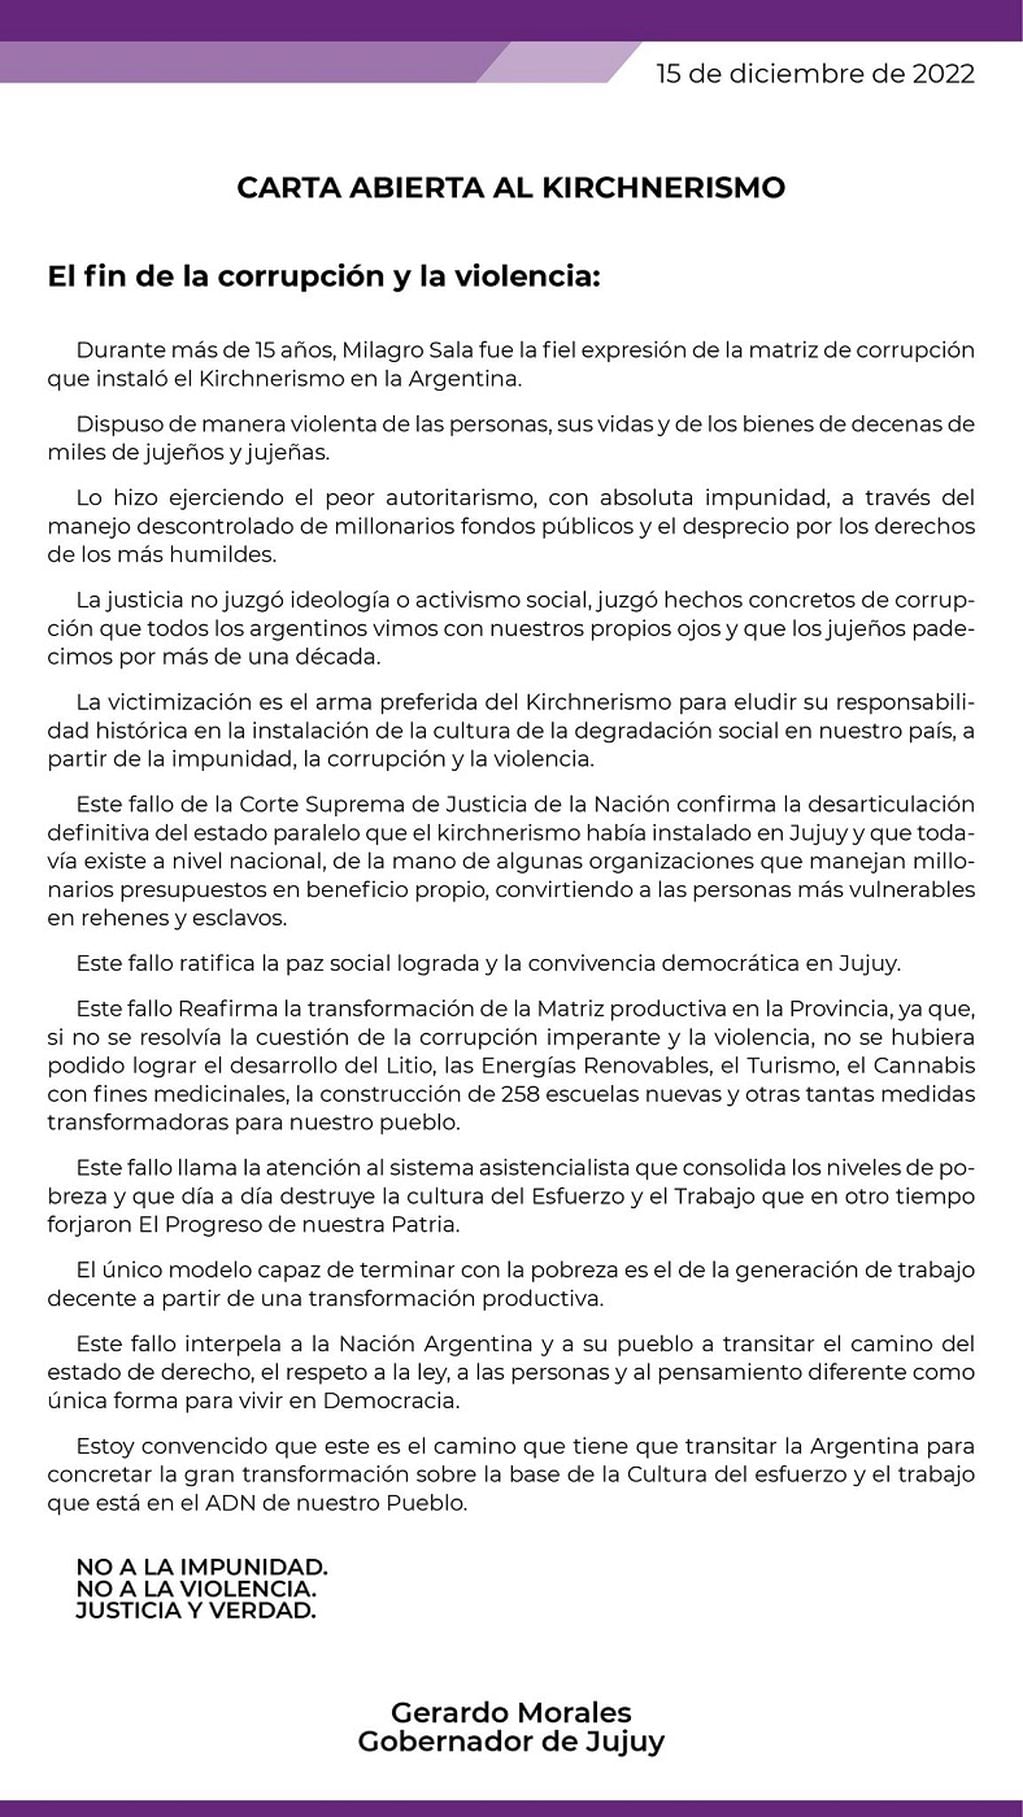 Gerardo Morales se expresó tras la ratificación de la condena a Milagro Sala (Twitter @GerardoMorales)